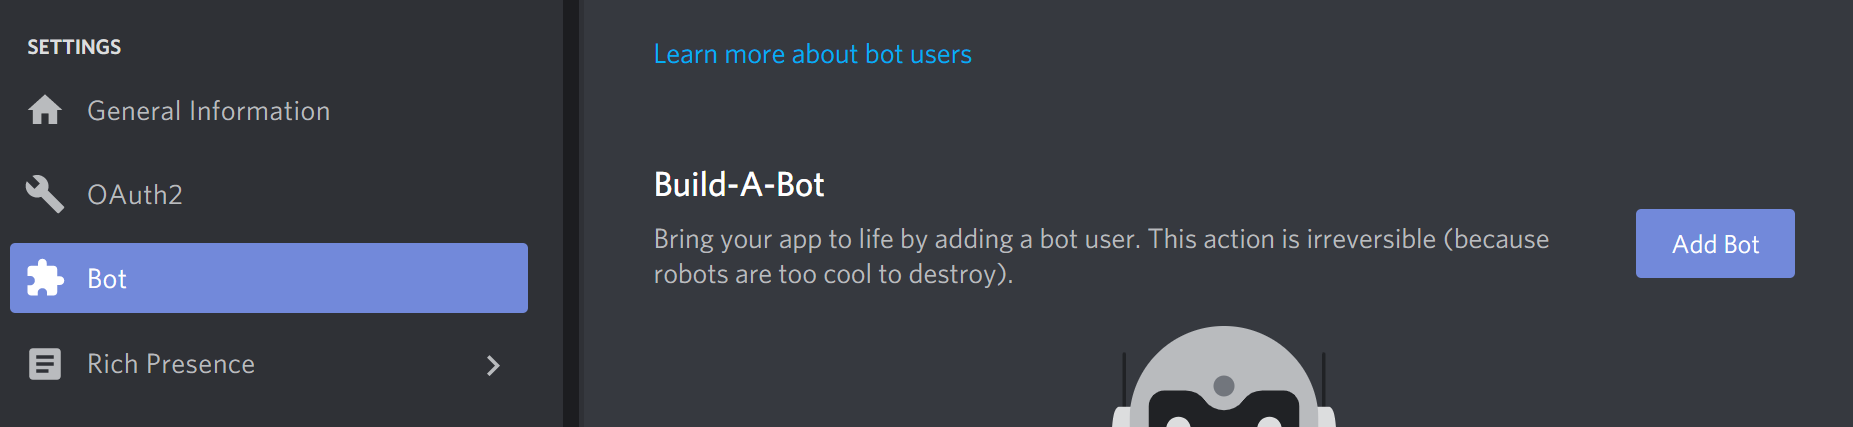 add-bot